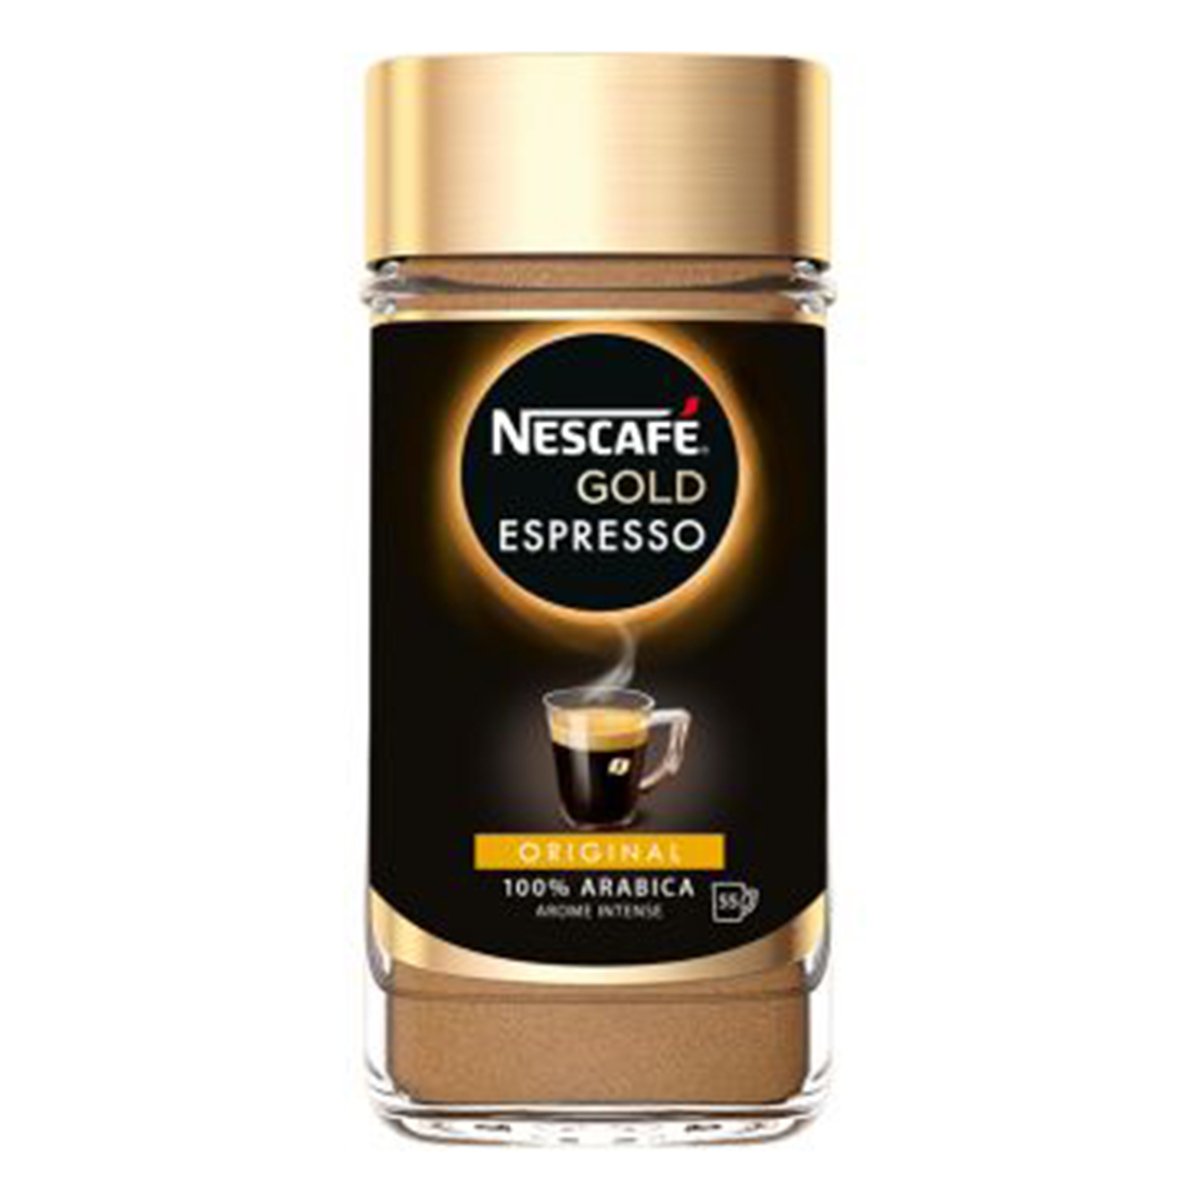 Nescafe Gold Espresso Coffee Original 100g